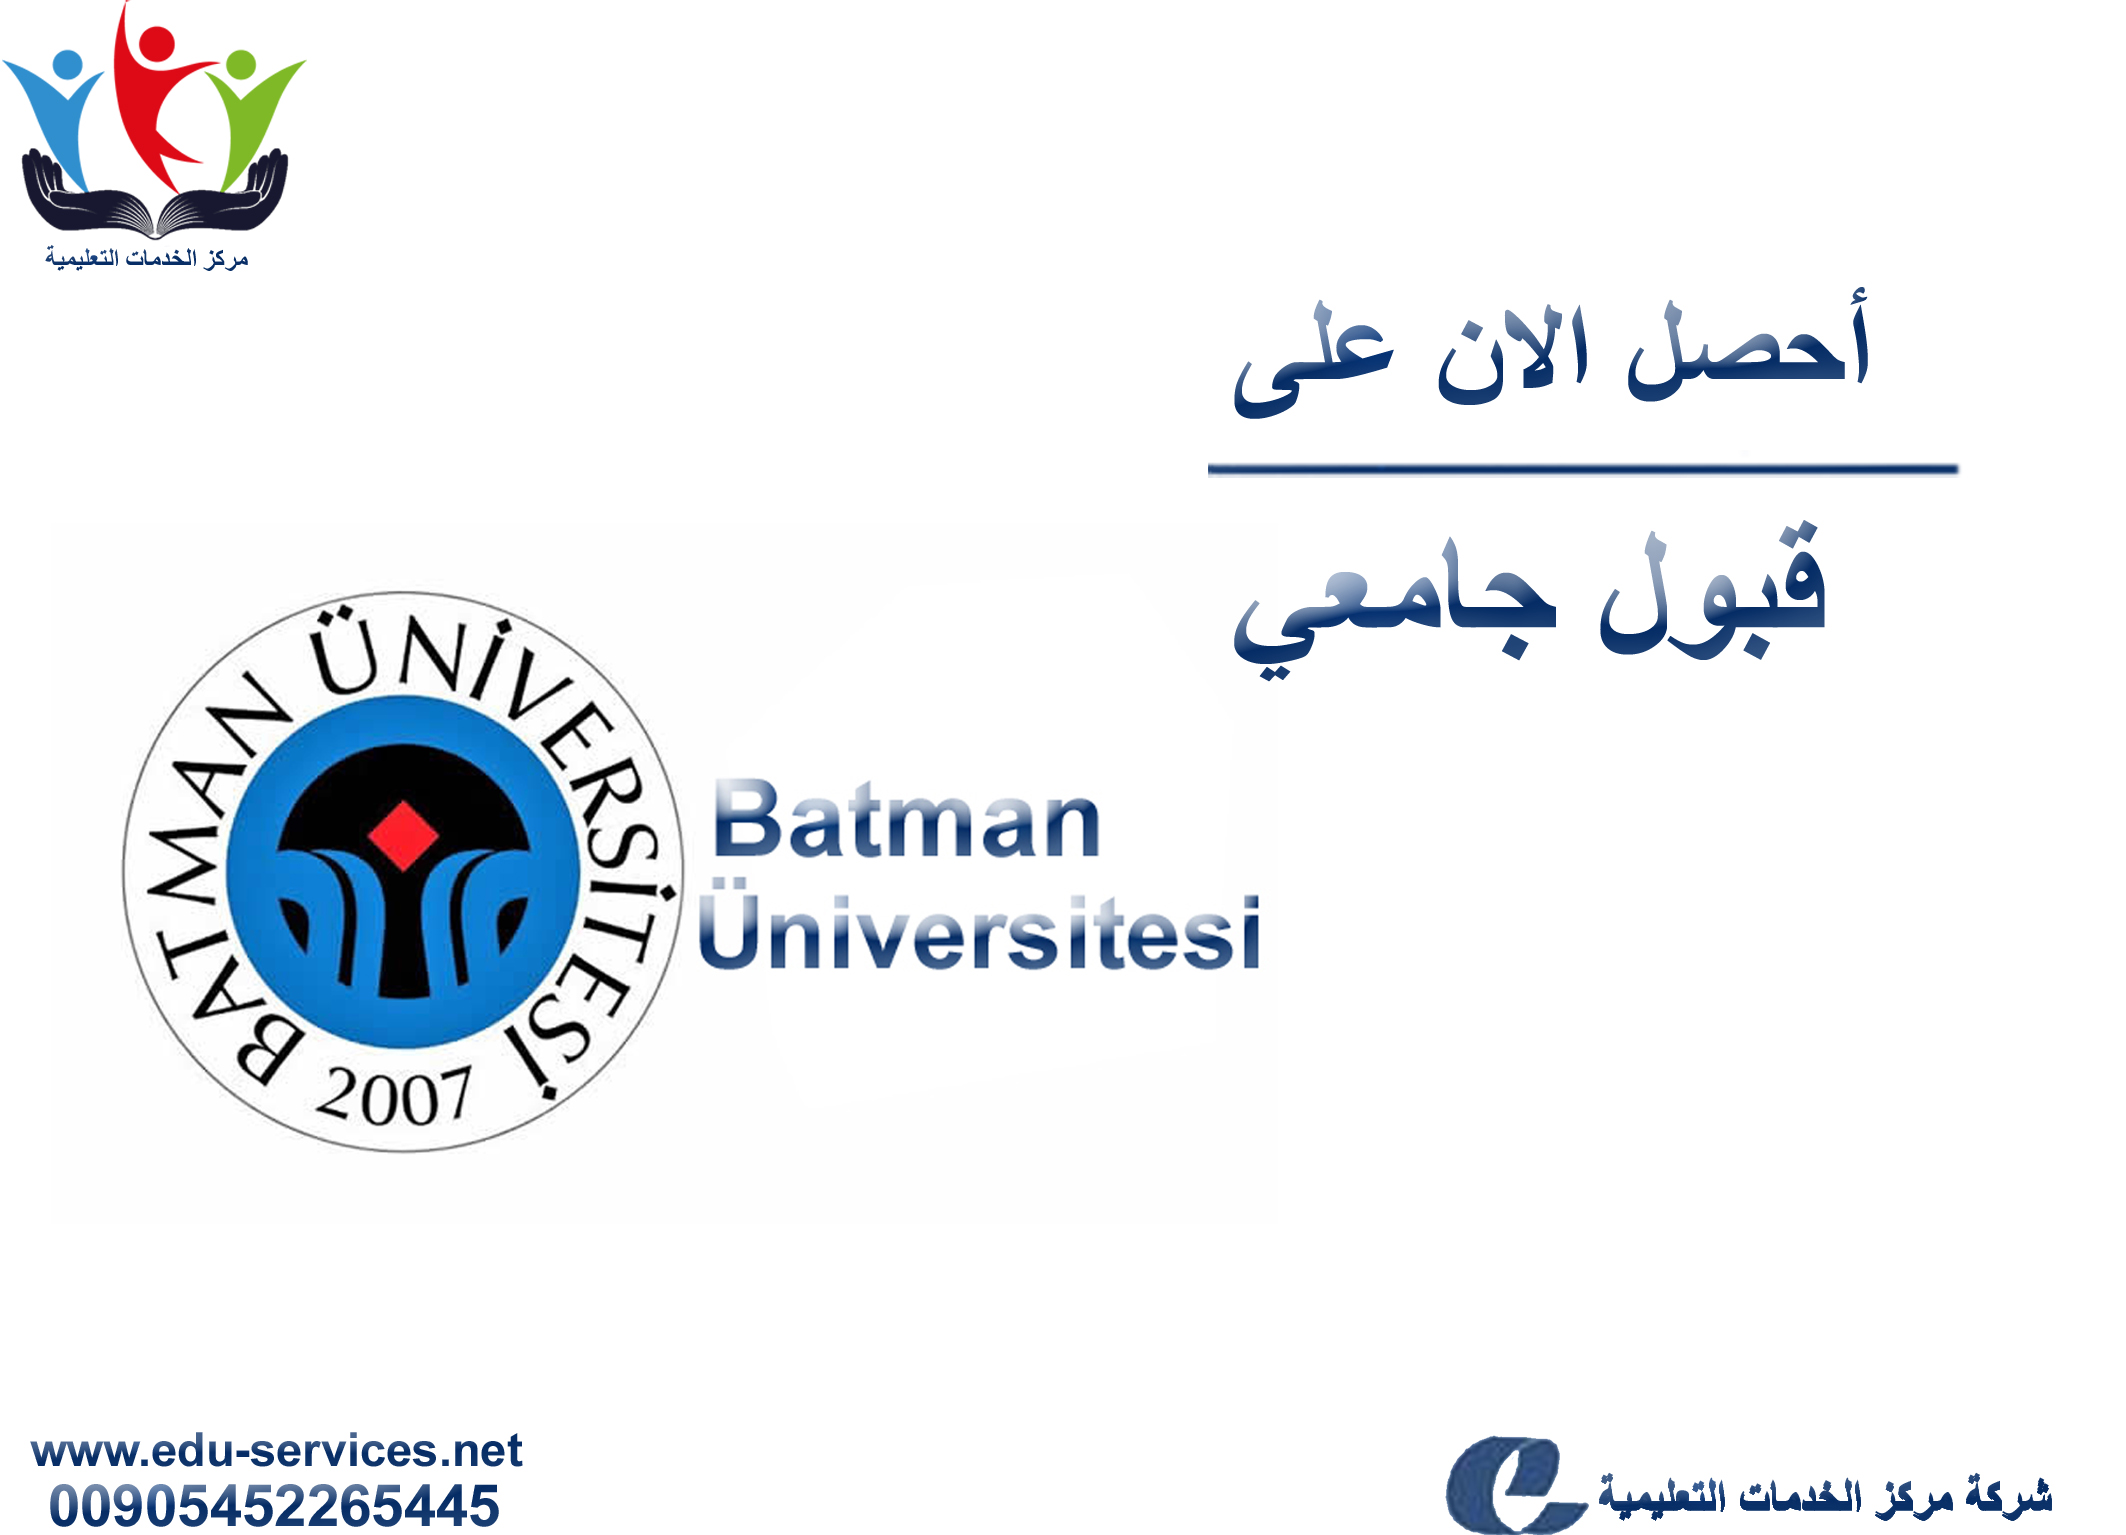 افتتاح التسجيل في جامعة باطمان للعام 2018-2019